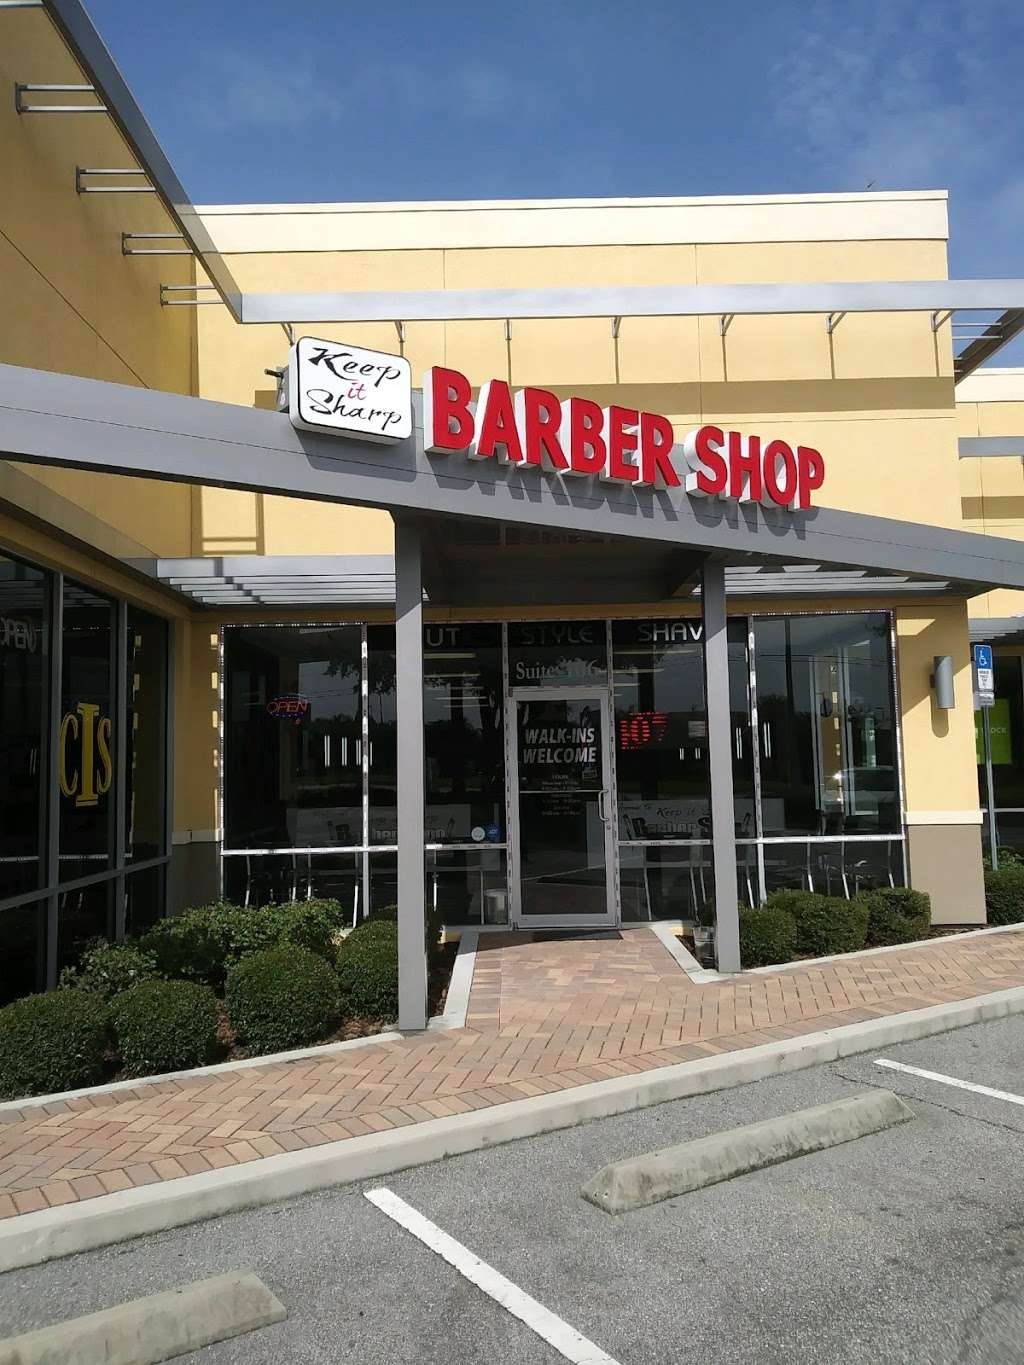 Keep It Sharp - Barber Shop Lake Nona | 7252 Narcoossee Rd, Orlando, FL 32822, USA | Phone: (407) 866-2279